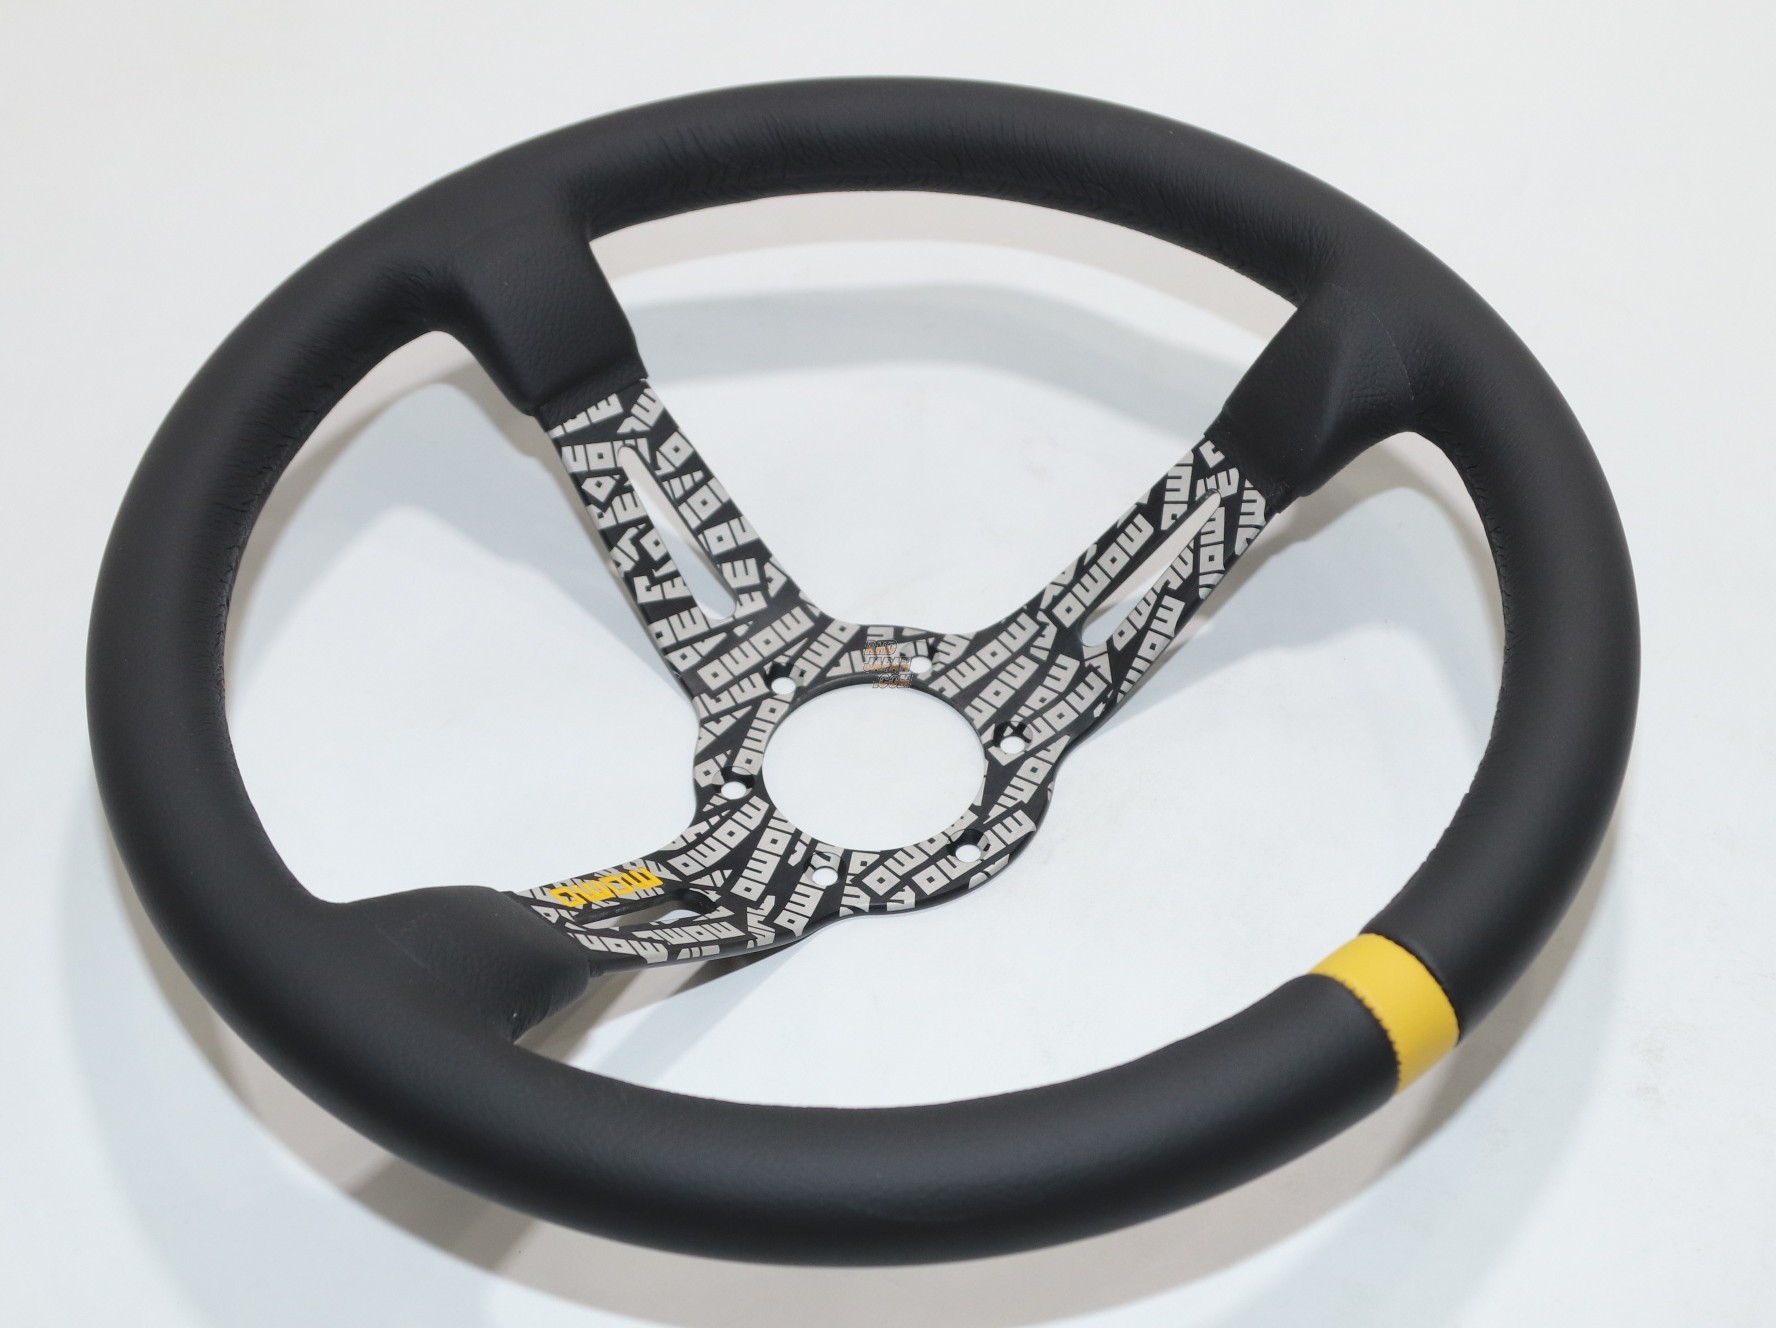 MOMO Steering Wheel - Ultra Japan Black Leather